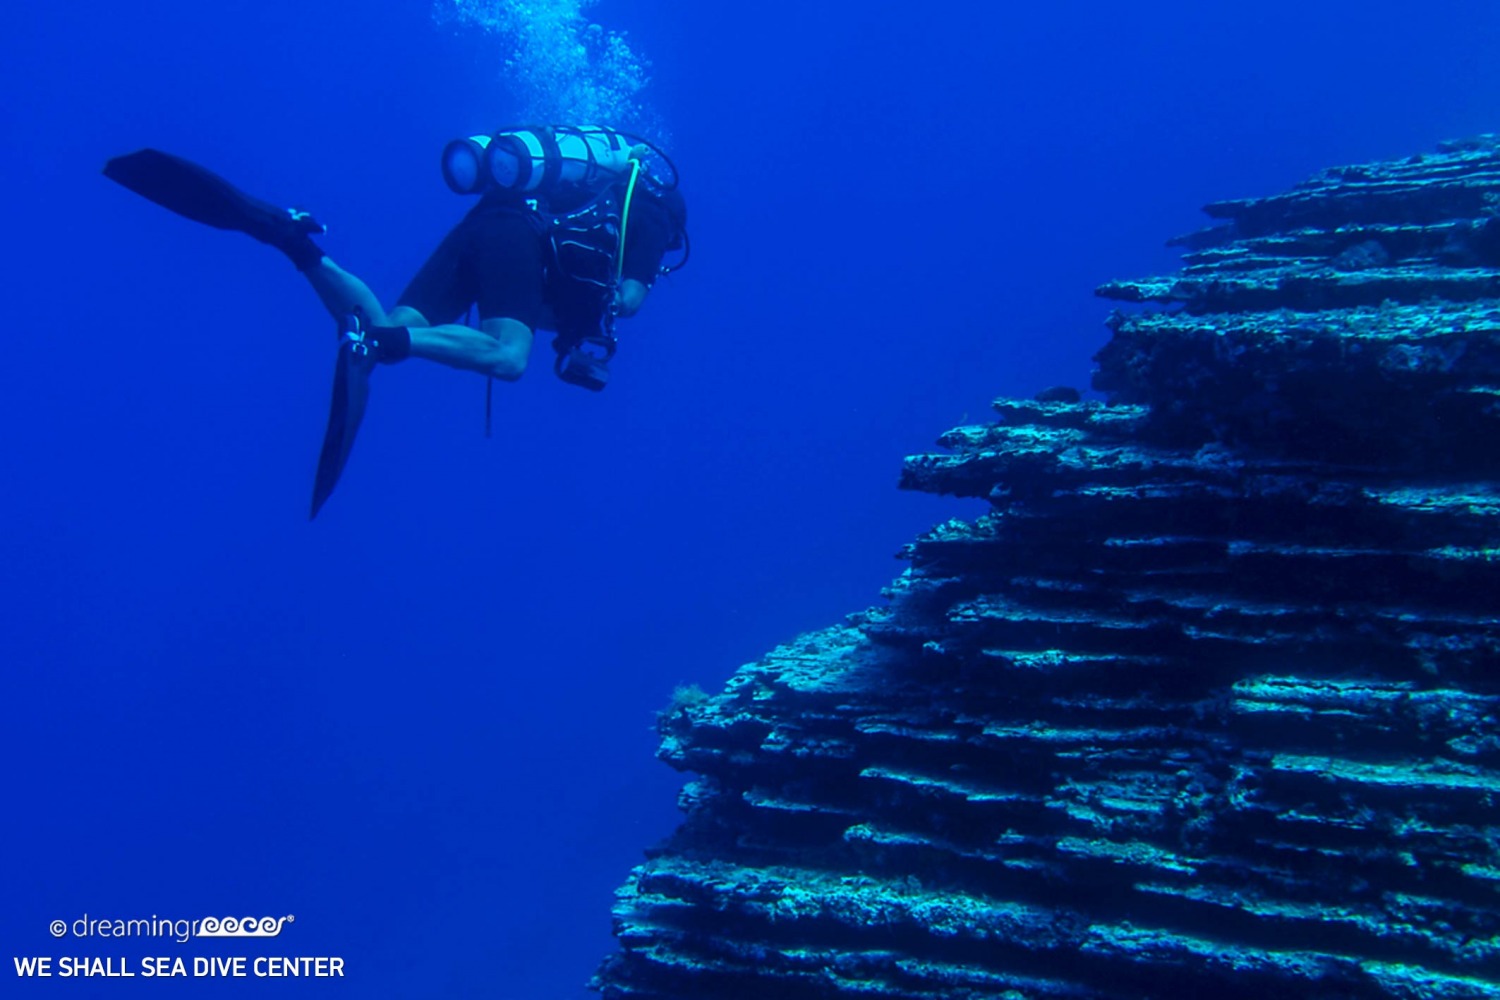 We Shall Sea Dive Center Amorgos, Scuba Diving Greece